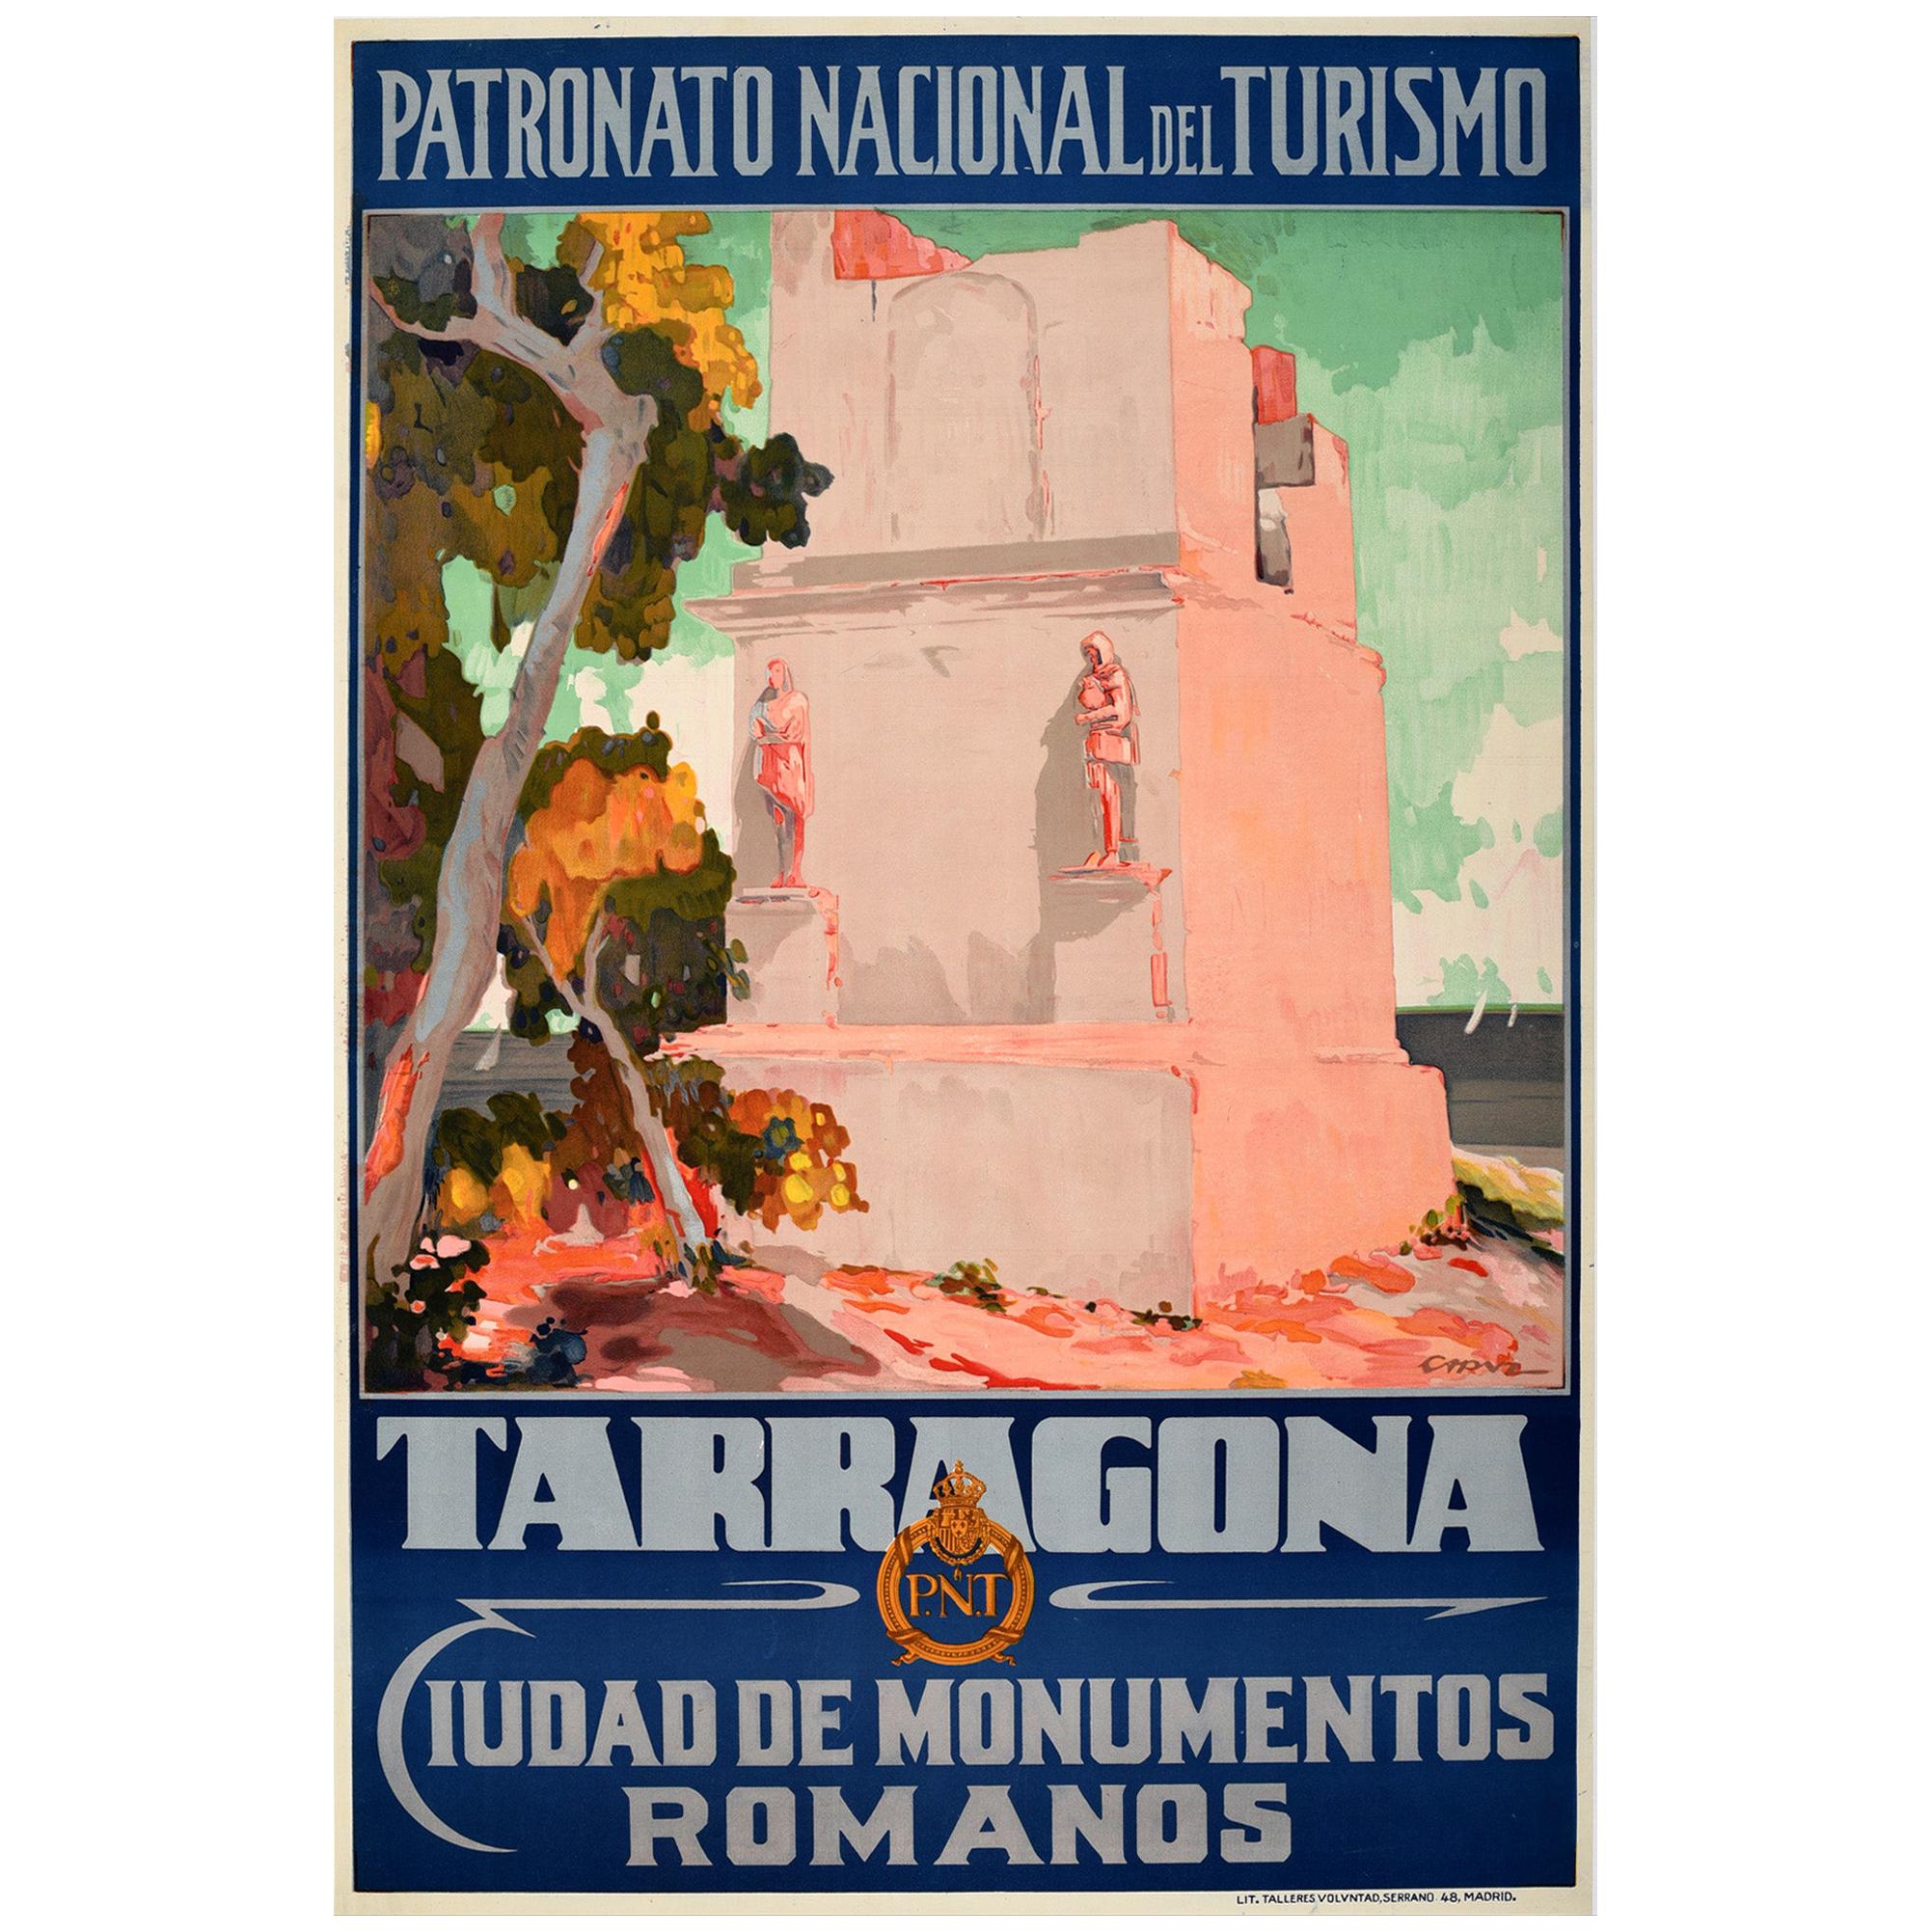 Original Vintage Travel Poster Tarragona Roman Monuments Torre De Los Escipiones